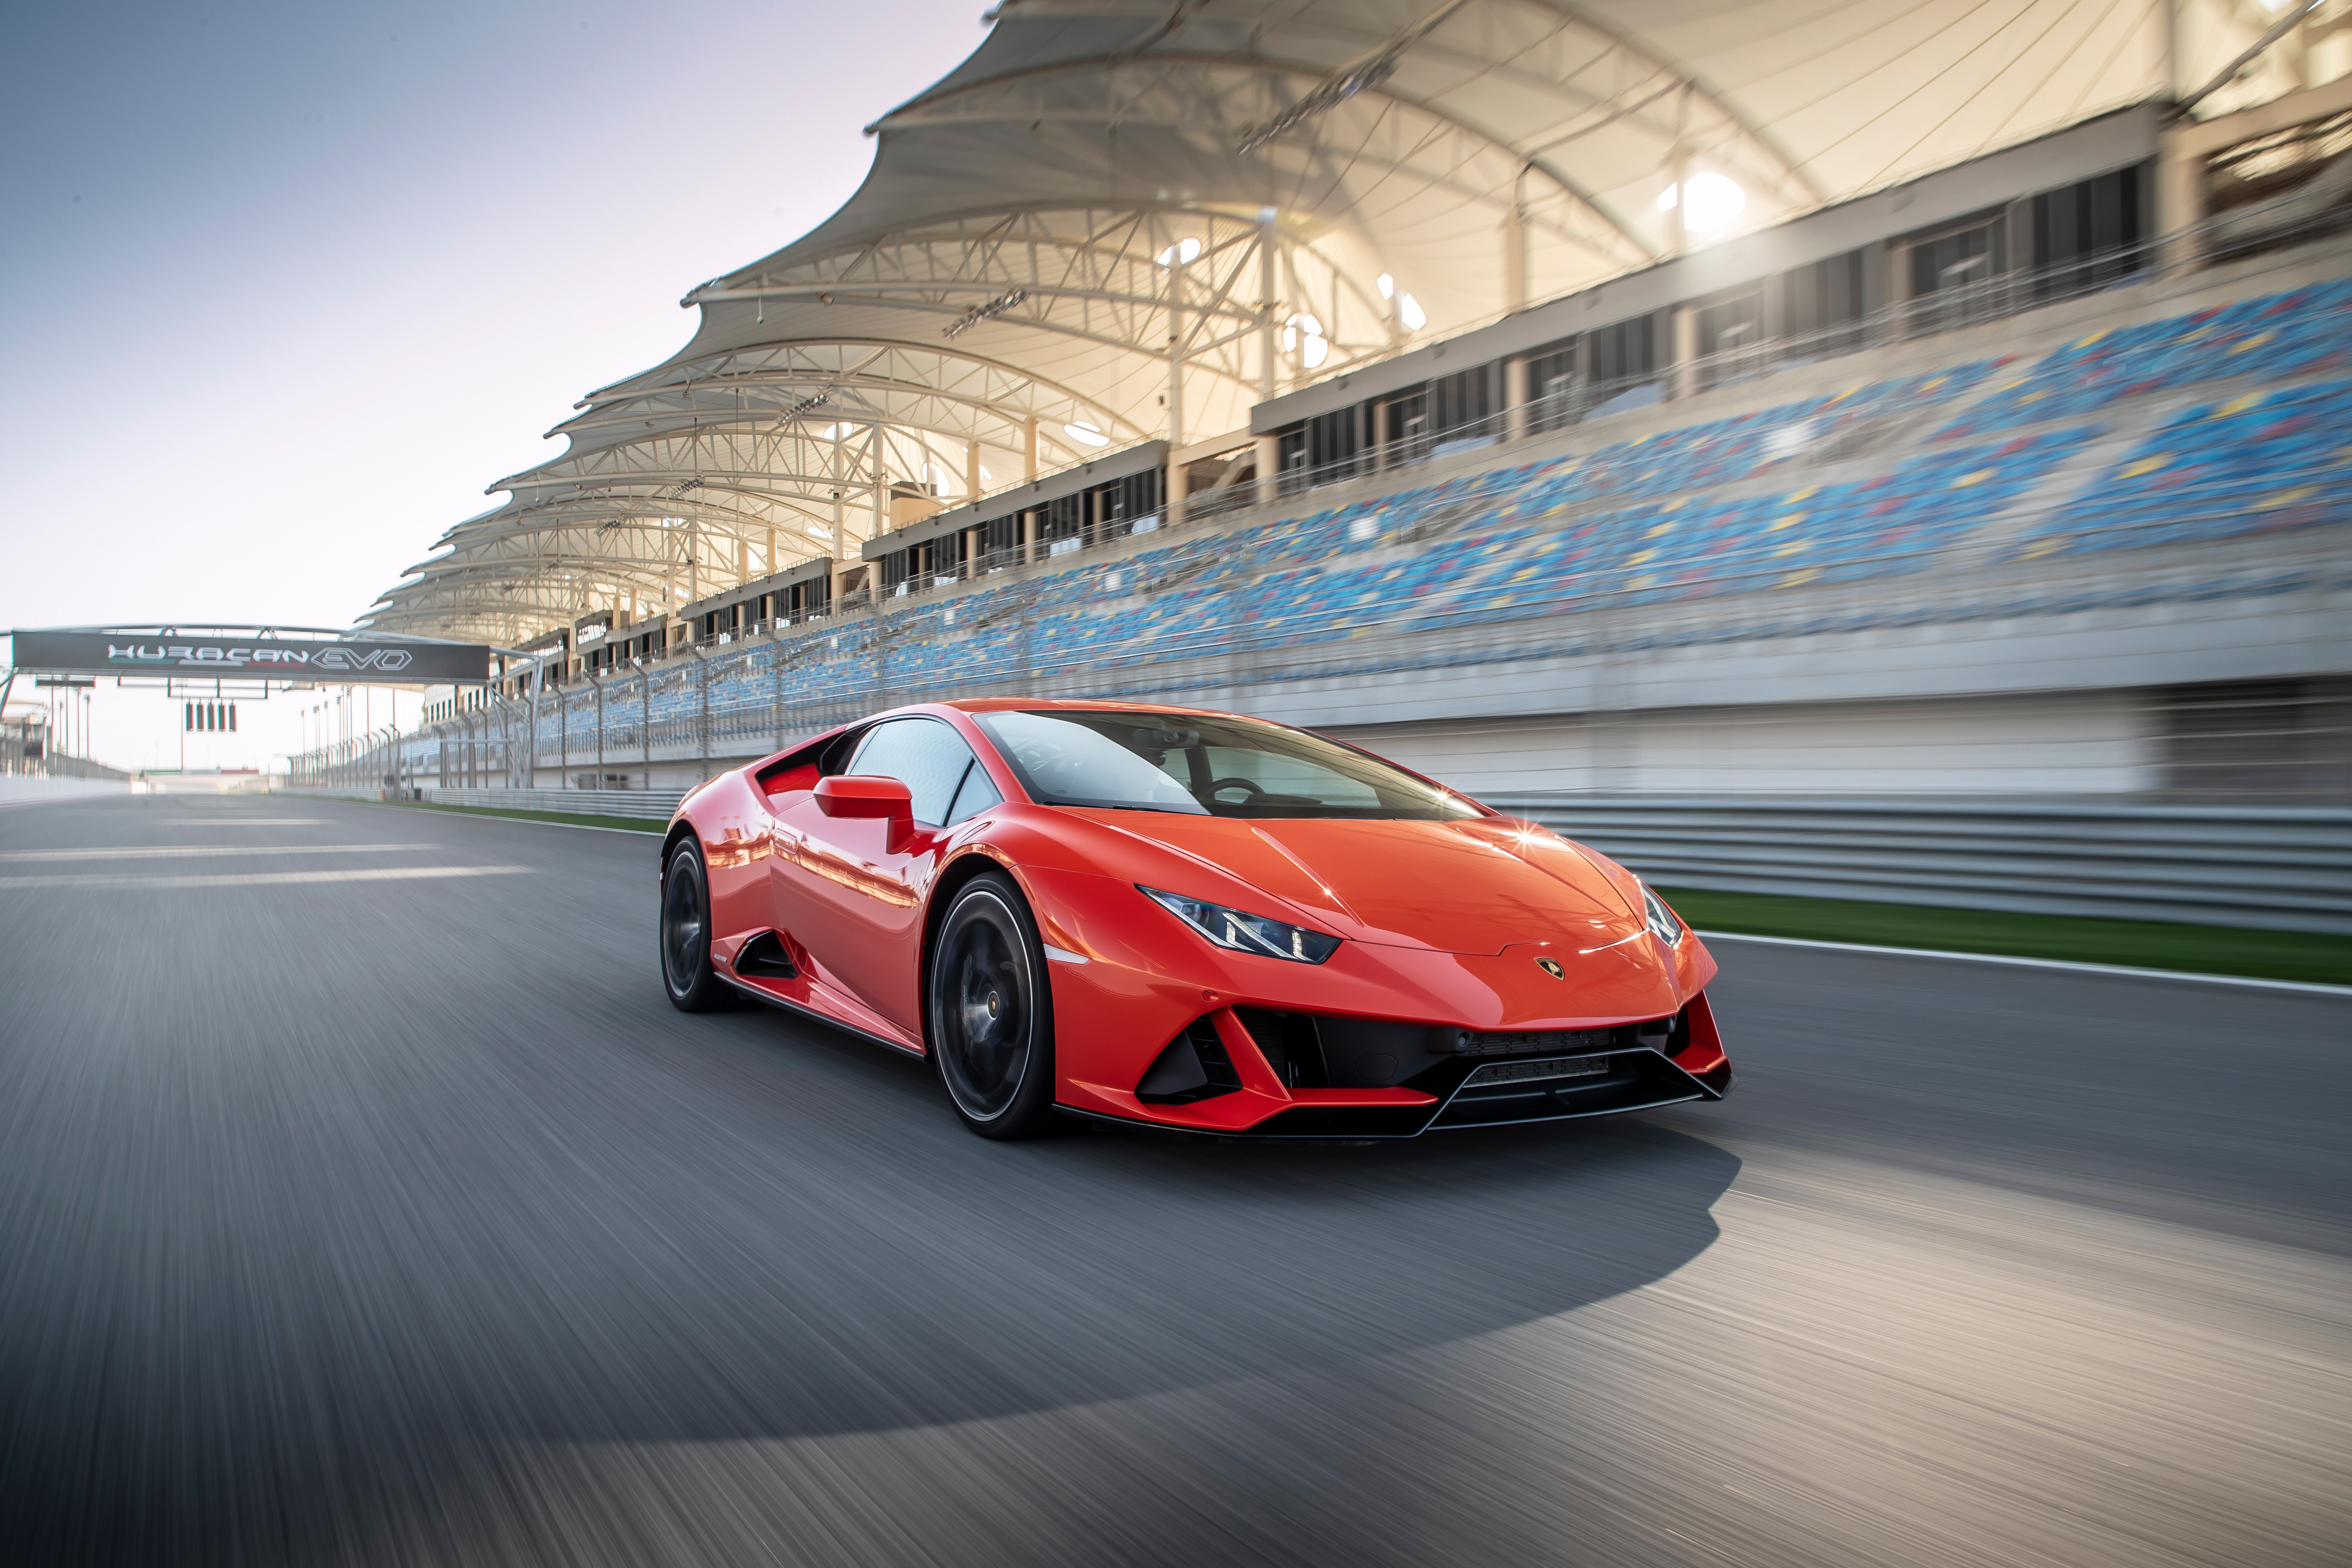 2019 Lamborghini Huracan Evo 4k Hd Cars 4k Wallpapers Images